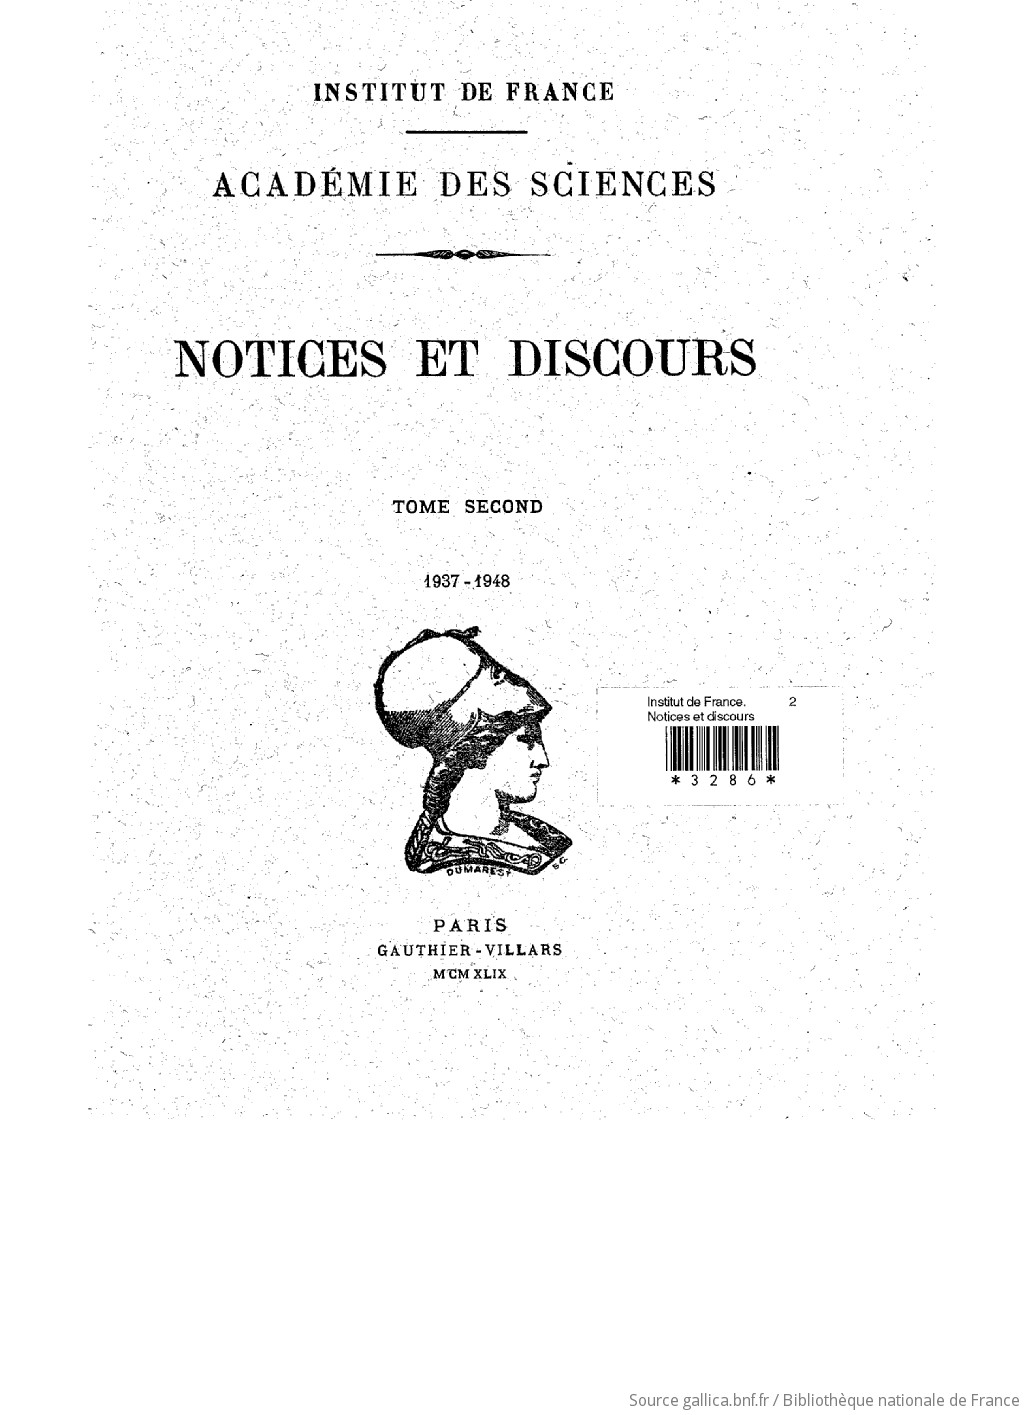 Notices et discours. t. 2 : 1937-1948 / Institut de France, Académie des sciences